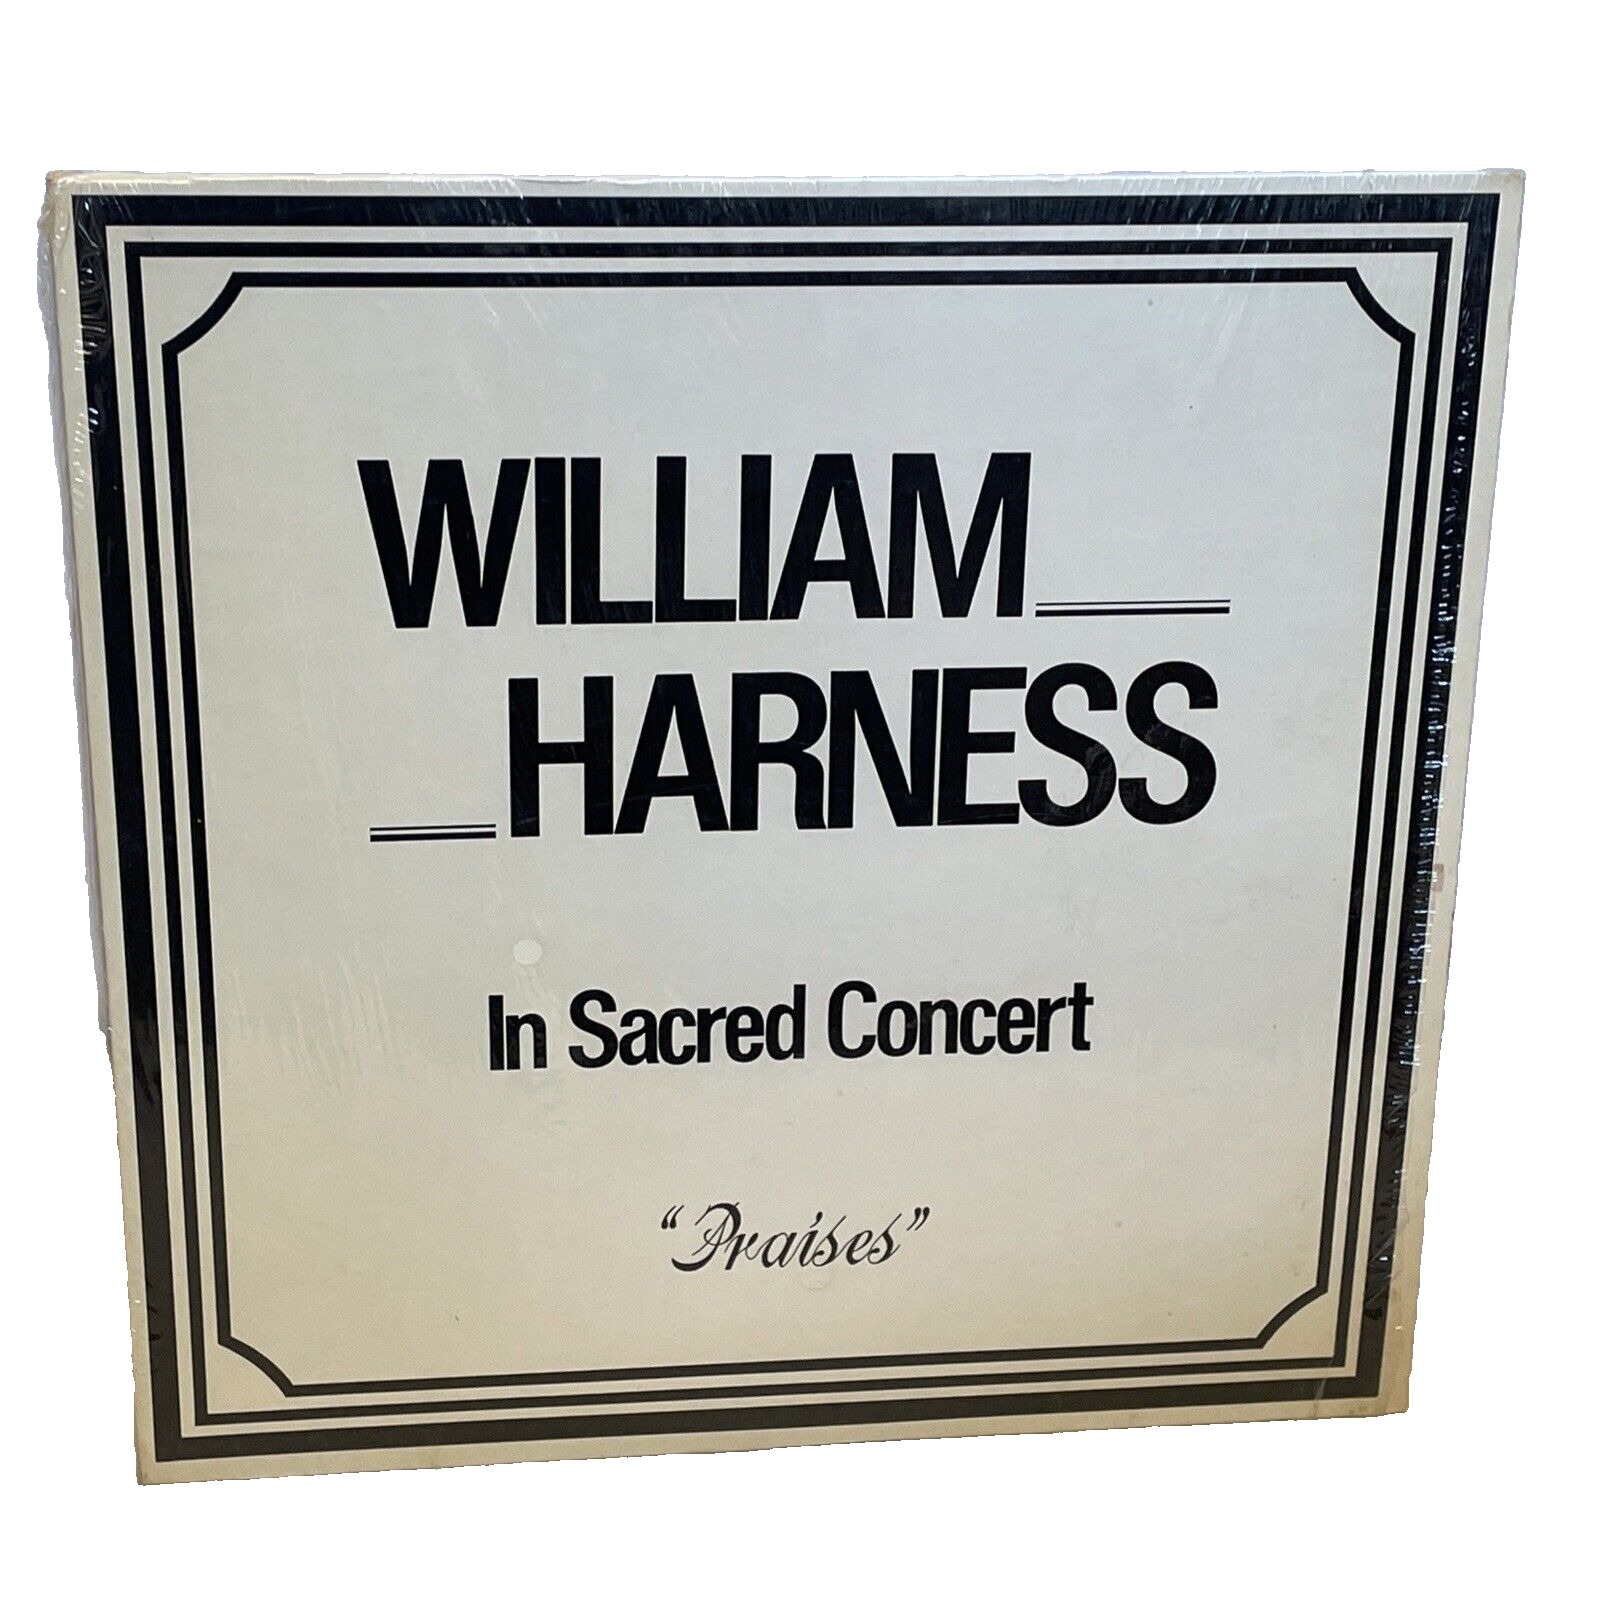 William Harness Praises (Vinyl) WHSC WHSC 101 VG LP Record Album